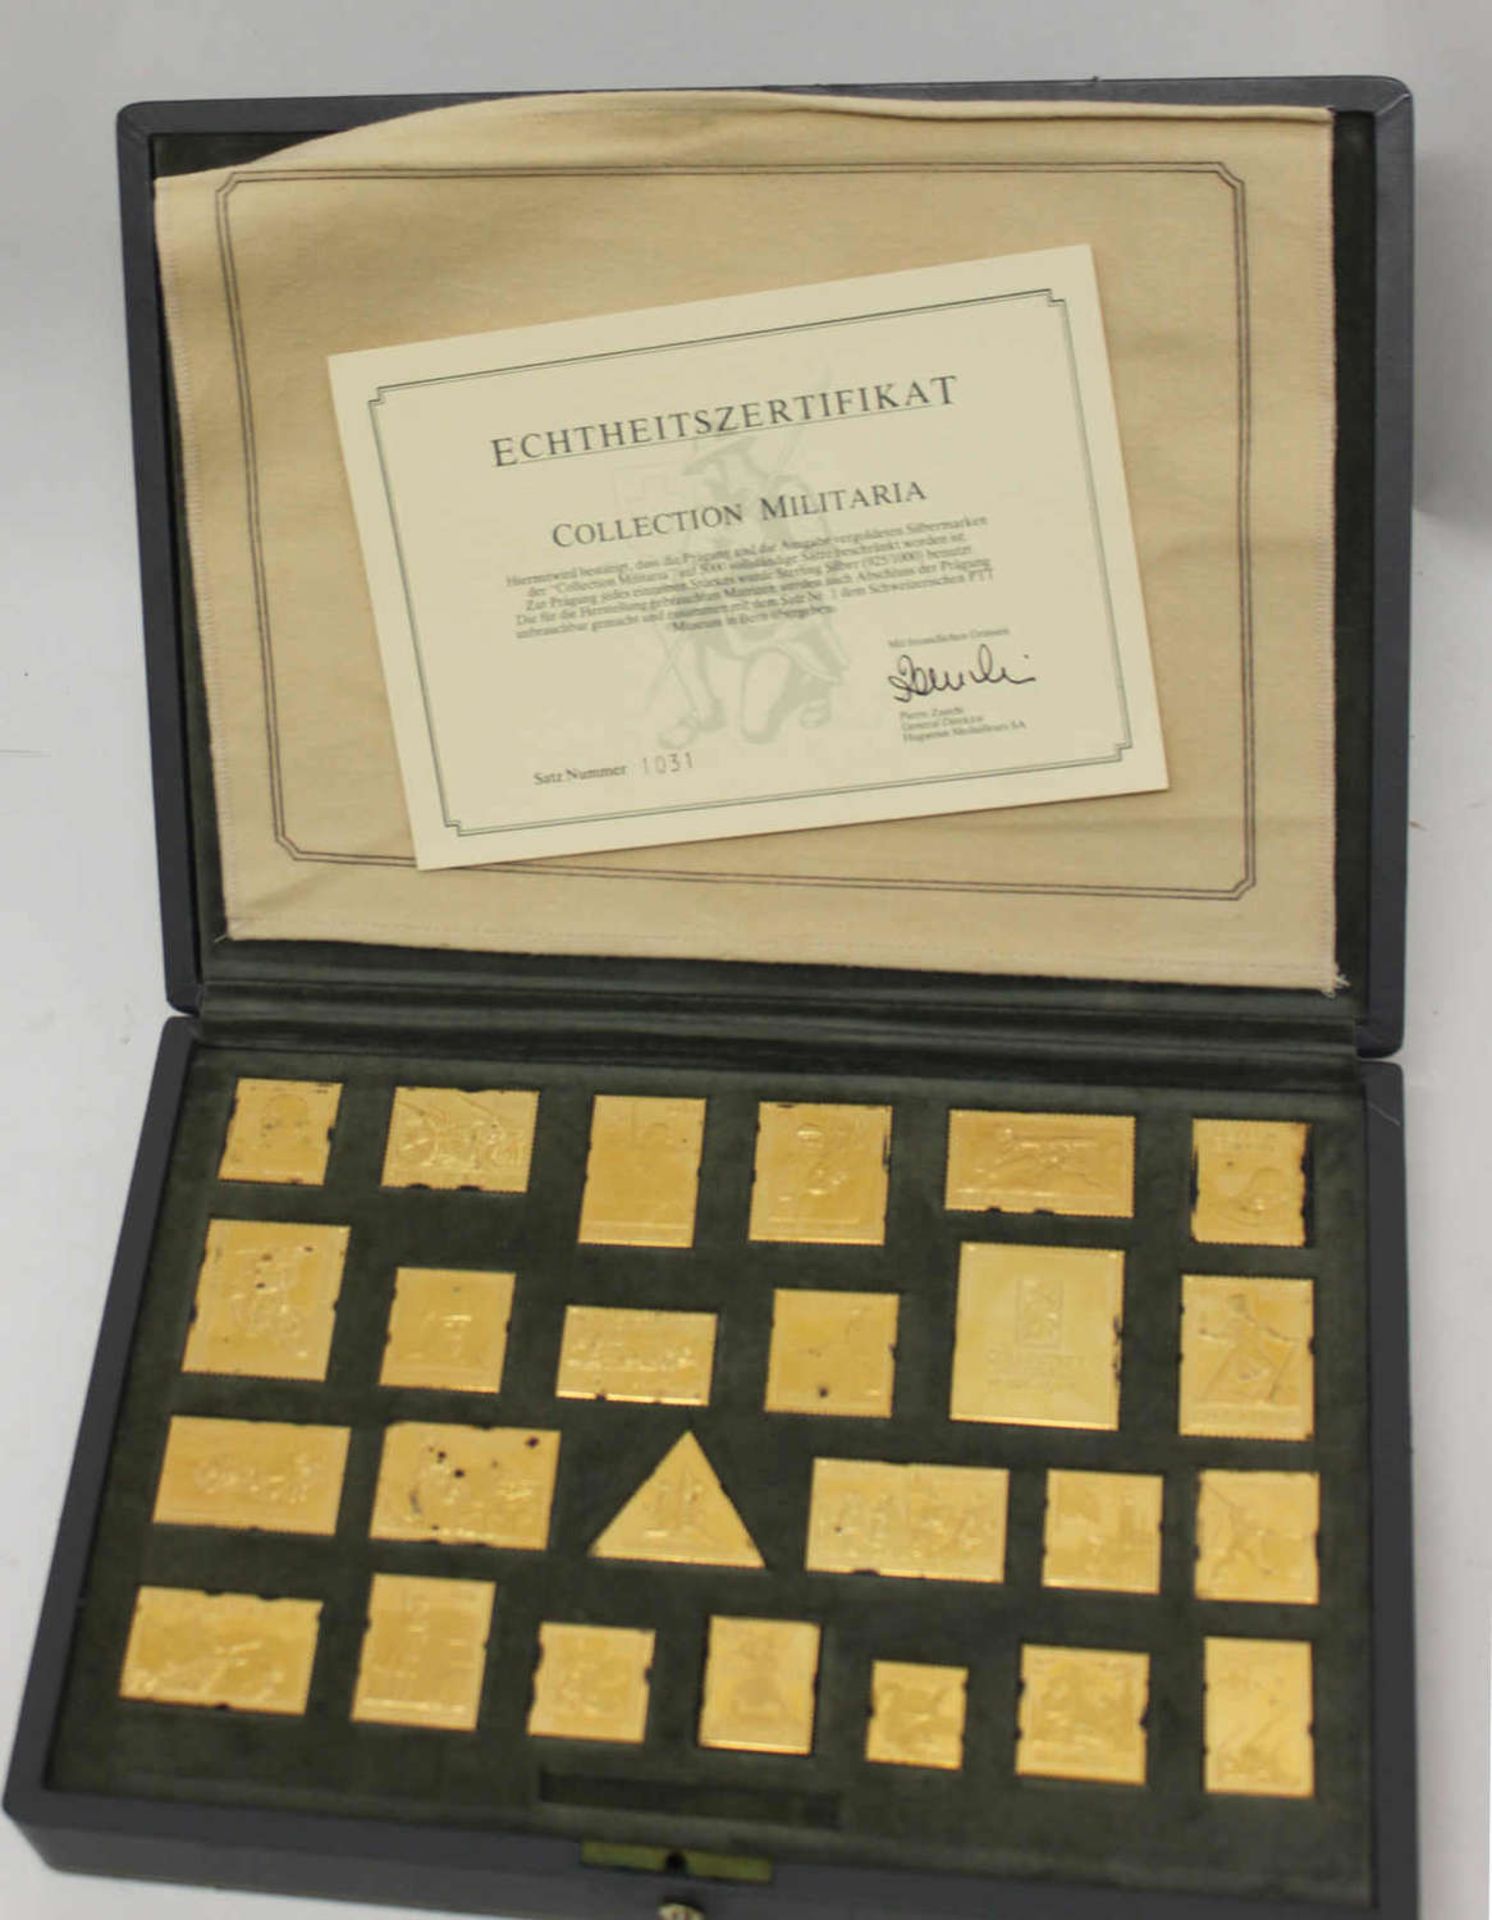 Schweiz Kollektion Militaria, eine Homage an die Schweizer Armee. 25 Markenmedaillen aus vergoldetem